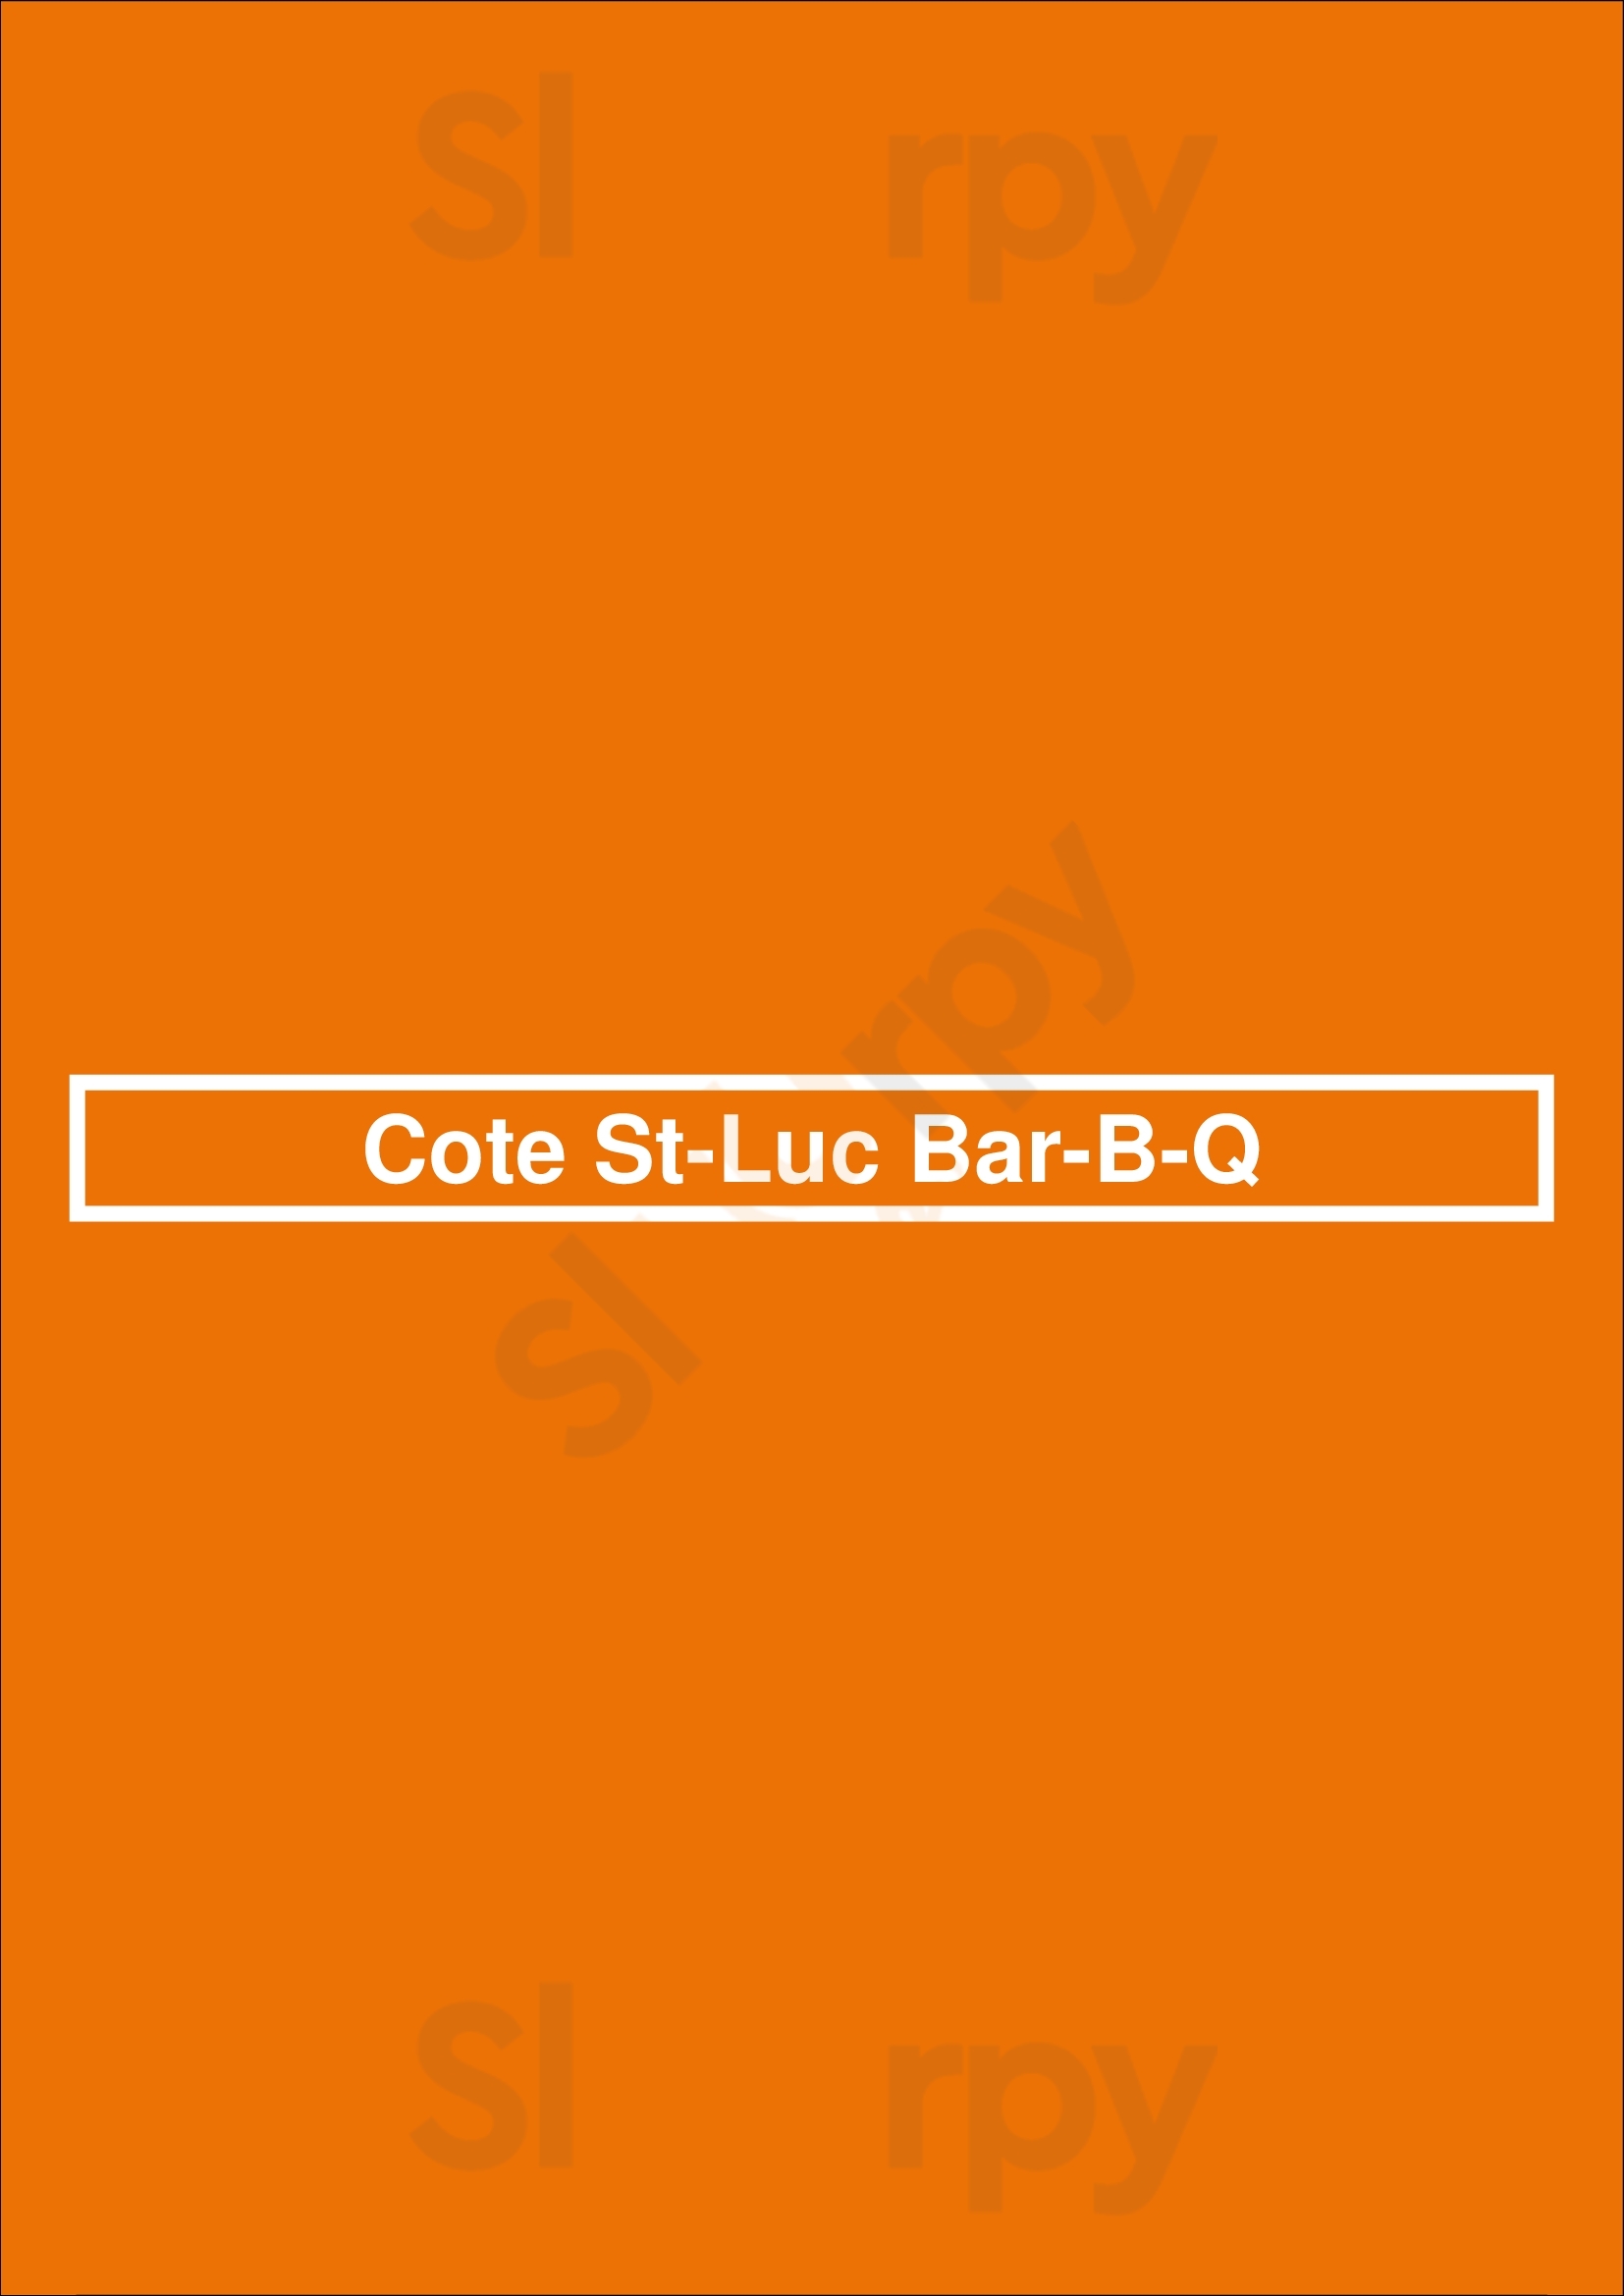 Cote St-luc Bbq Dollard-des-Ormeaux Menu - 1